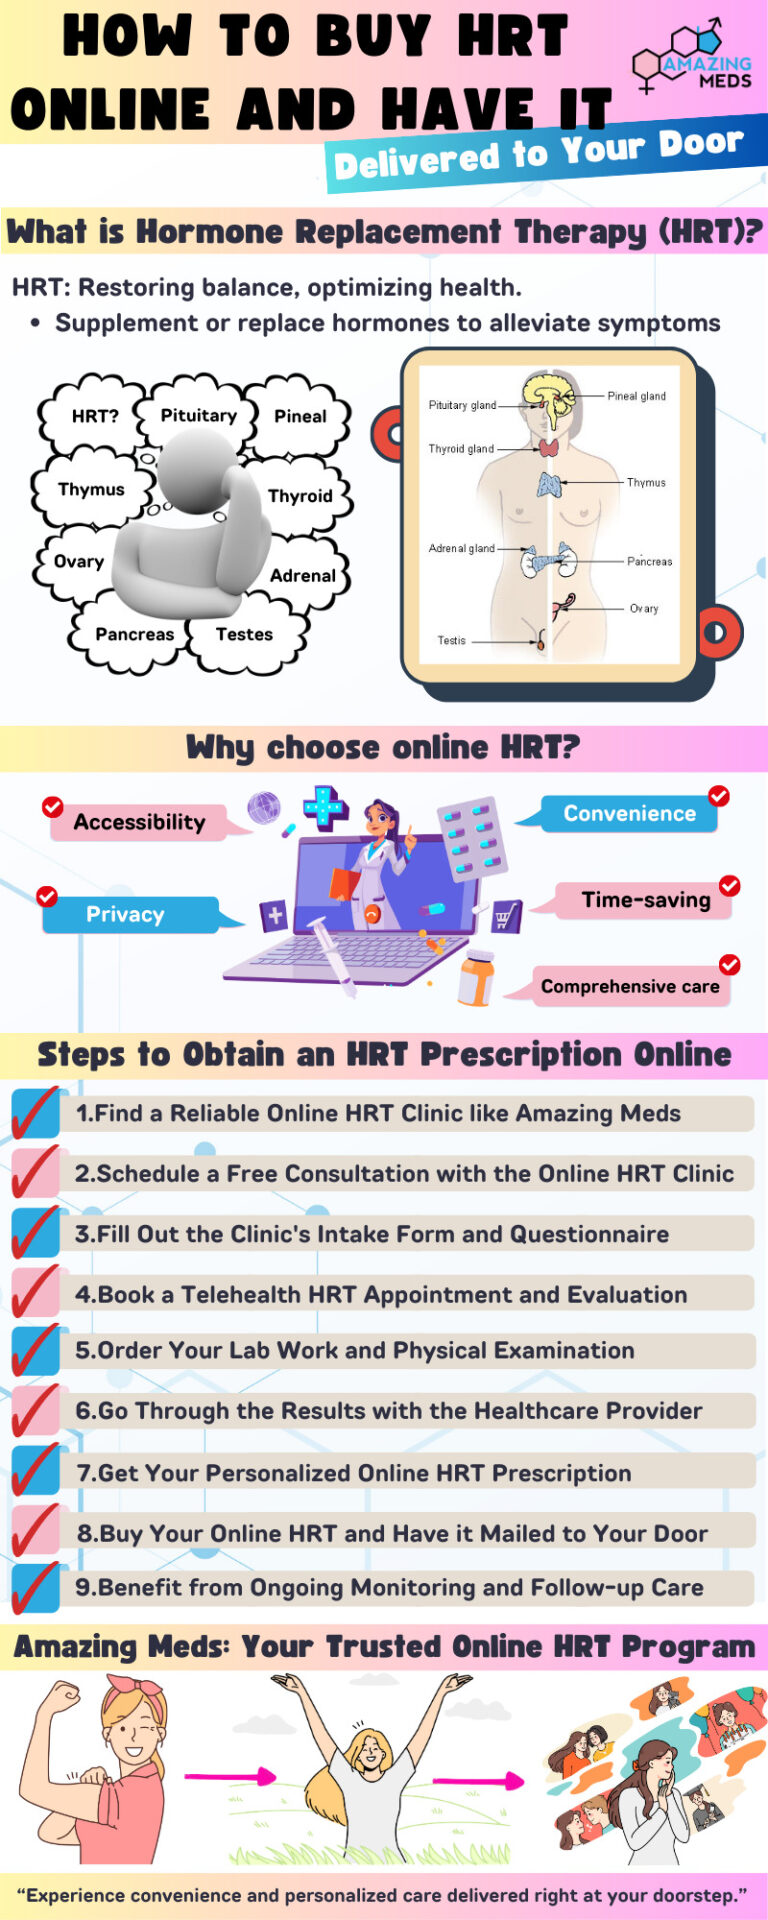 How to Buy HRT Online